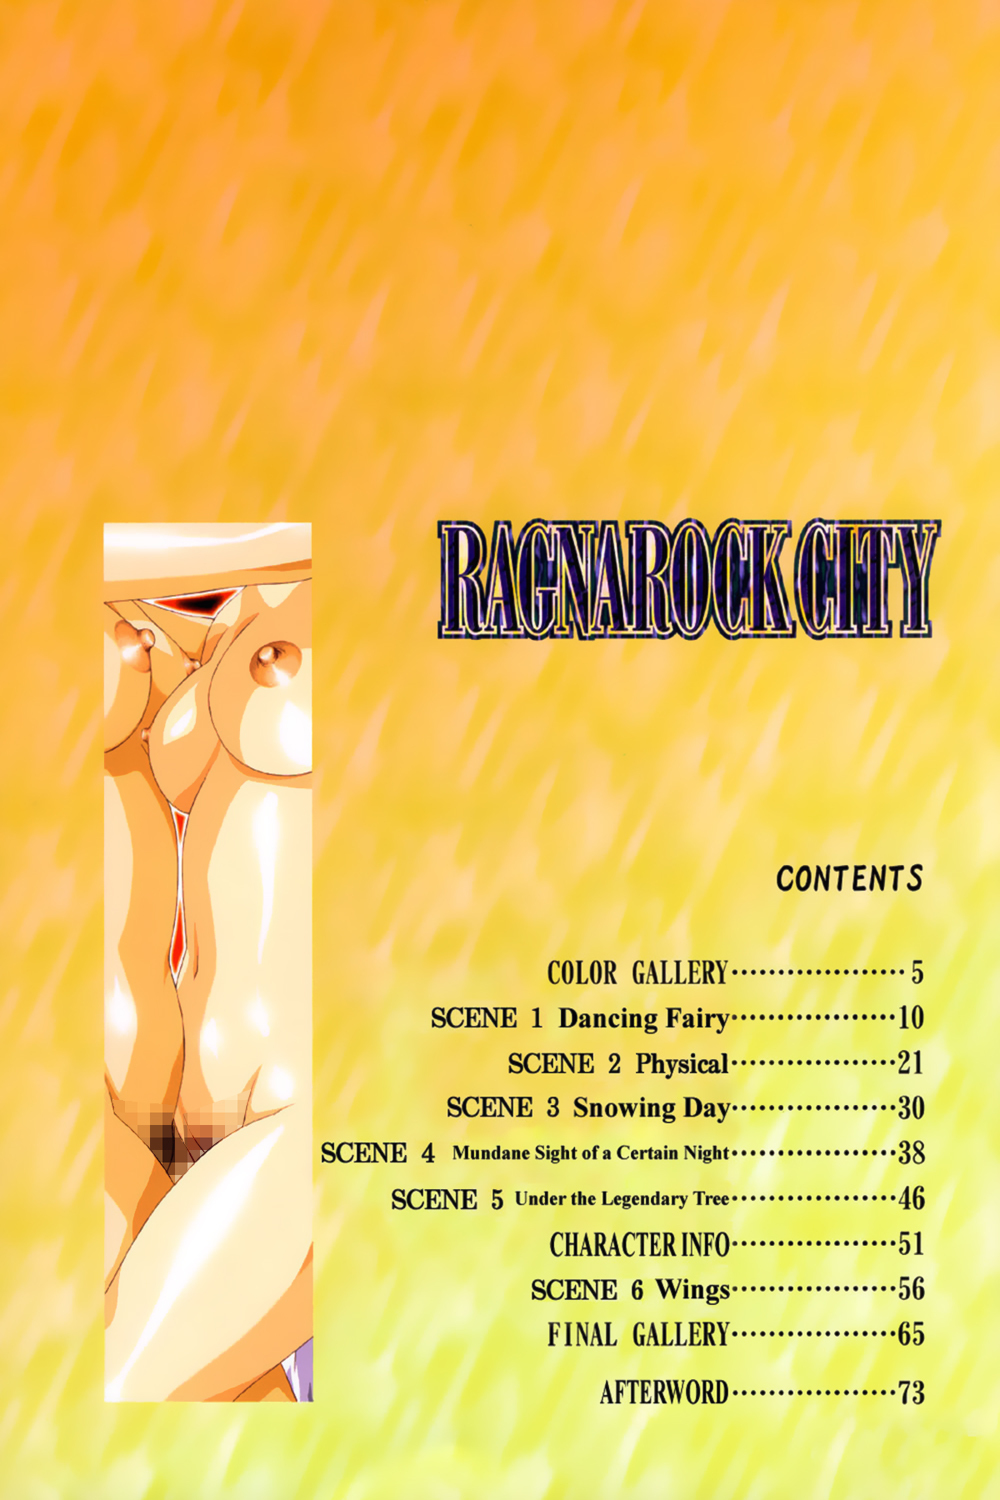 [Satoshi Urushihara] Ragnarock City [English] page 8 full